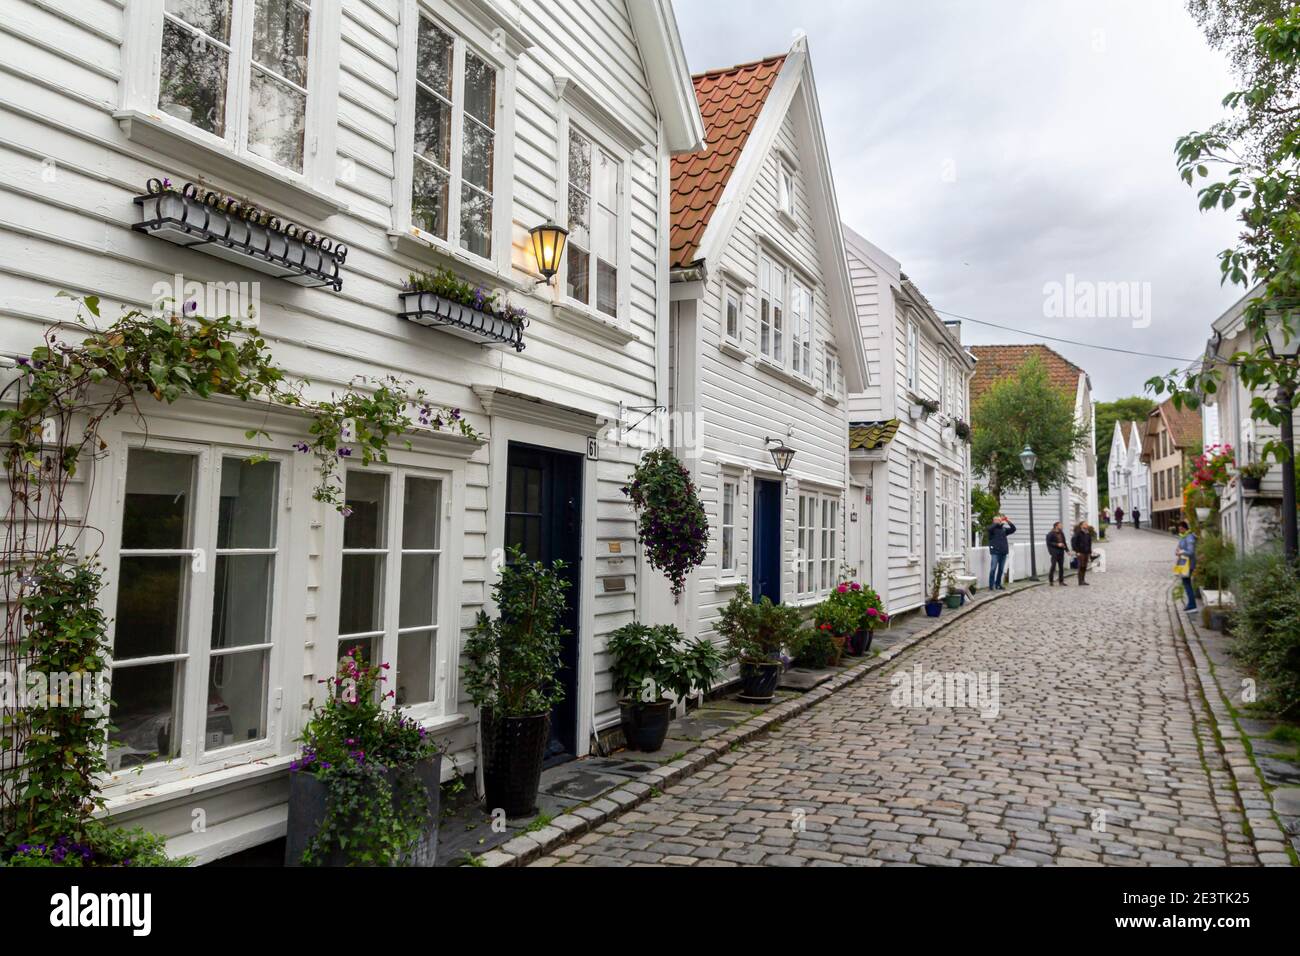 Gamle Stavanger, una zona histórica de la ciudad antigua con edificios de madera blanca restaurada de los siglos 18 y 19 Foto de stock